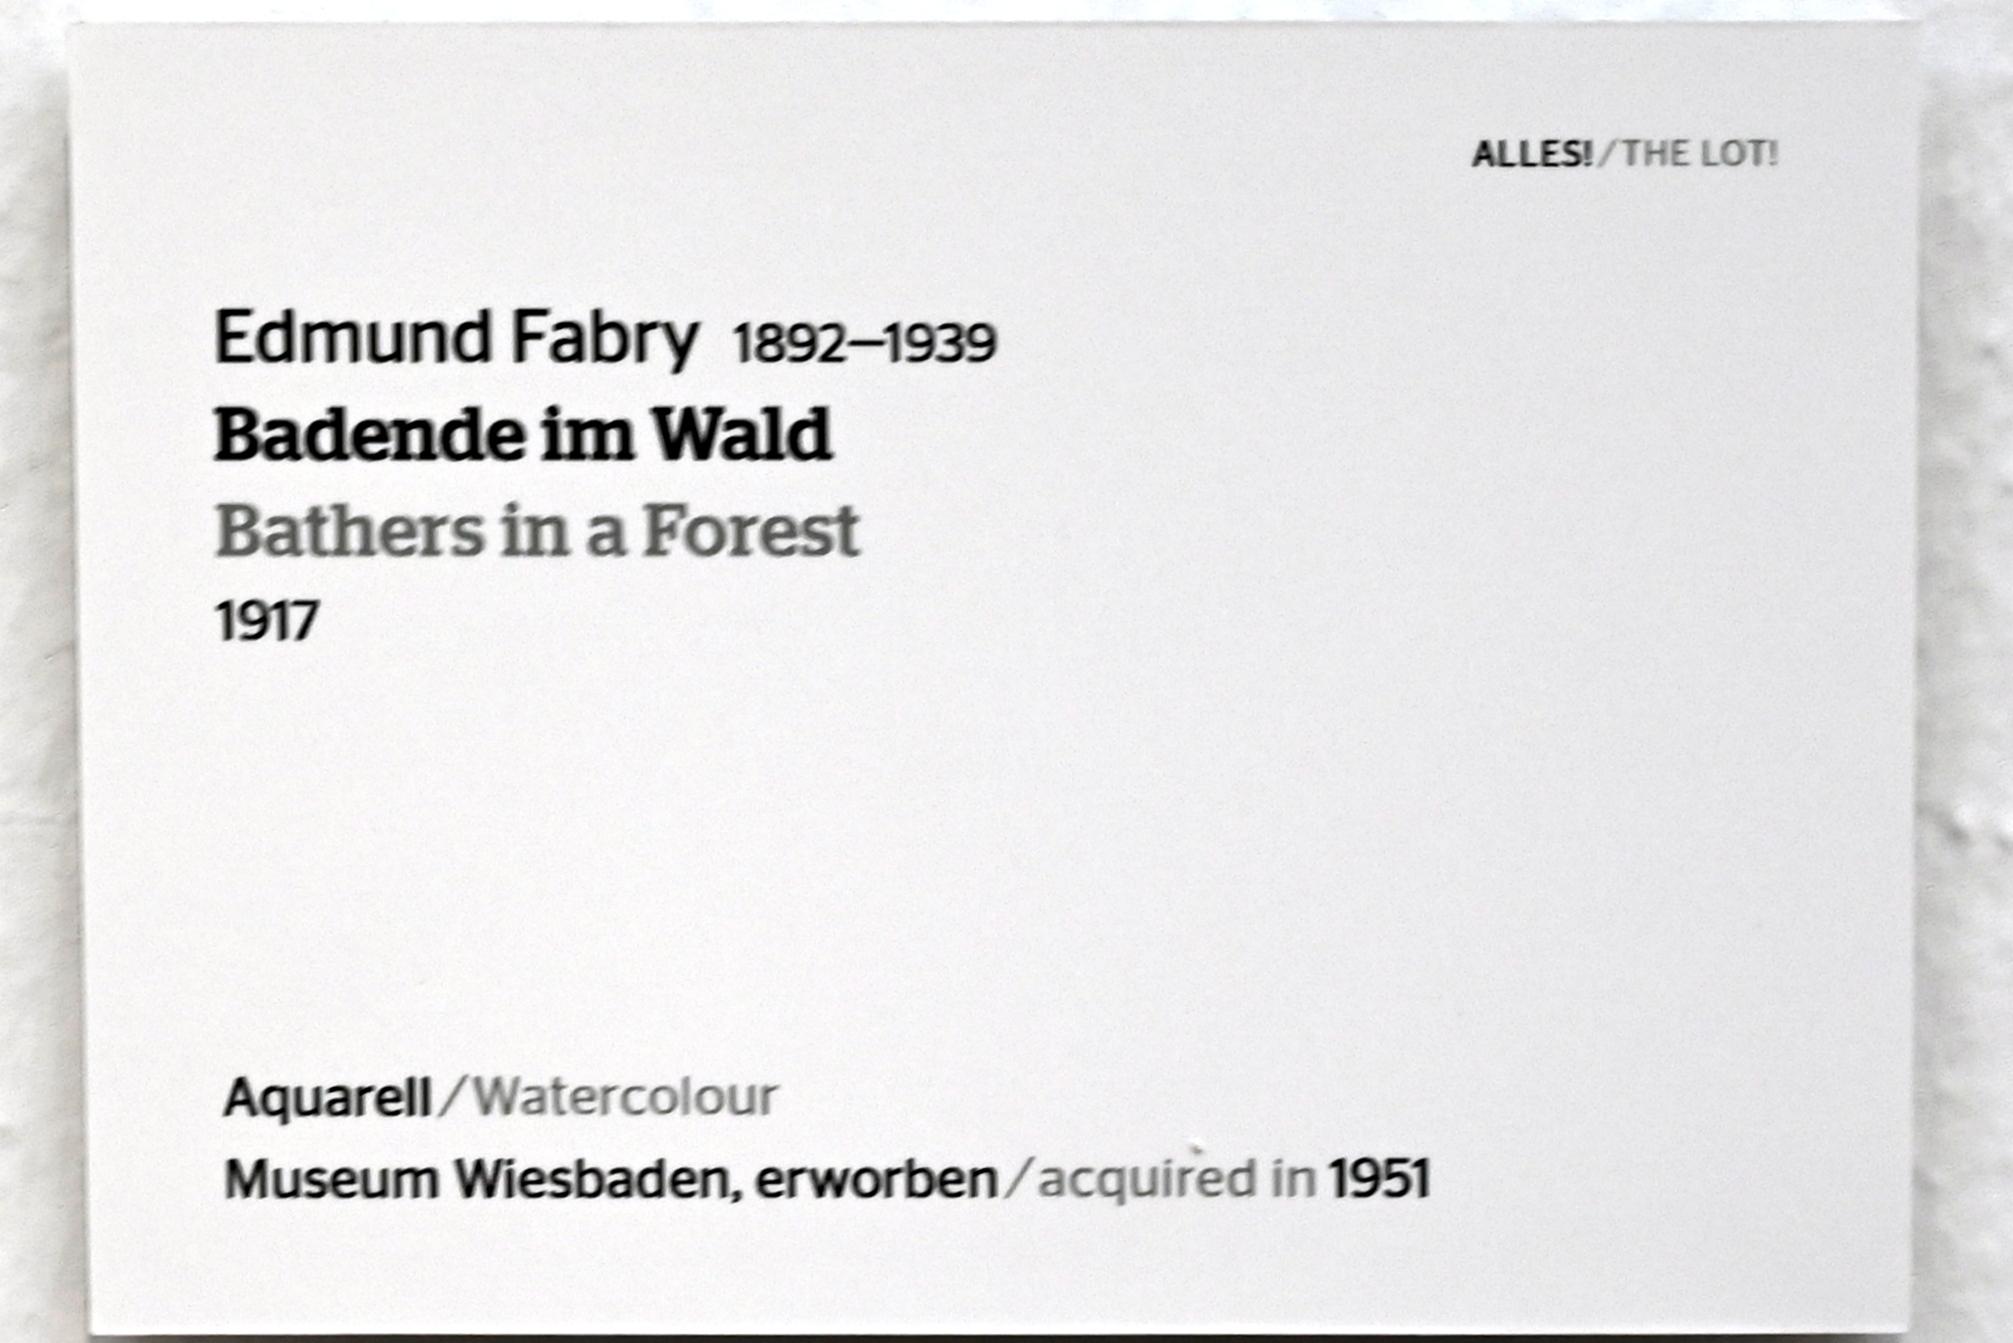 Edmund Fabry (1917), Badende im Wald, Wiesbaden, Museum Wiesbaden, Ausstellung "Alles! 100 Jahre Jawlensky in Wiesbaden" vom 17.09.-26.06.2022, Saal 12, 1917, Bild 2/2